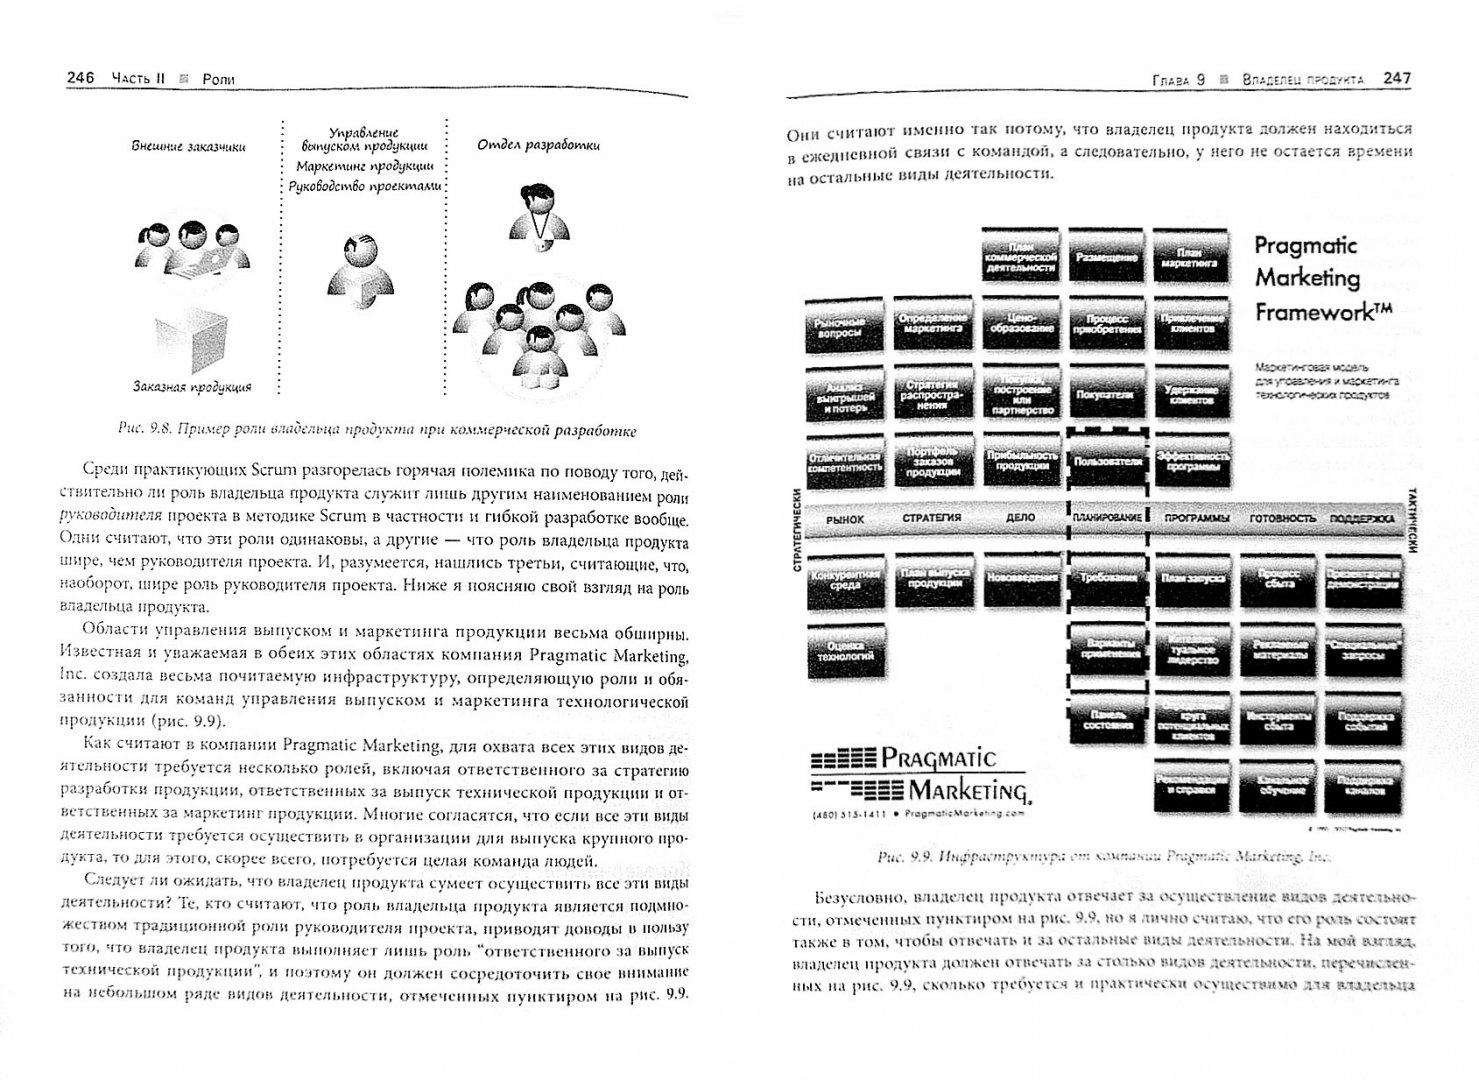 Иллюстрация 1 из 20 для Основы Scrum: практическое руководство по гибкой разработке ПО - Кеннет Рубин | Лабиринт - книги. Источник: Лабиринт